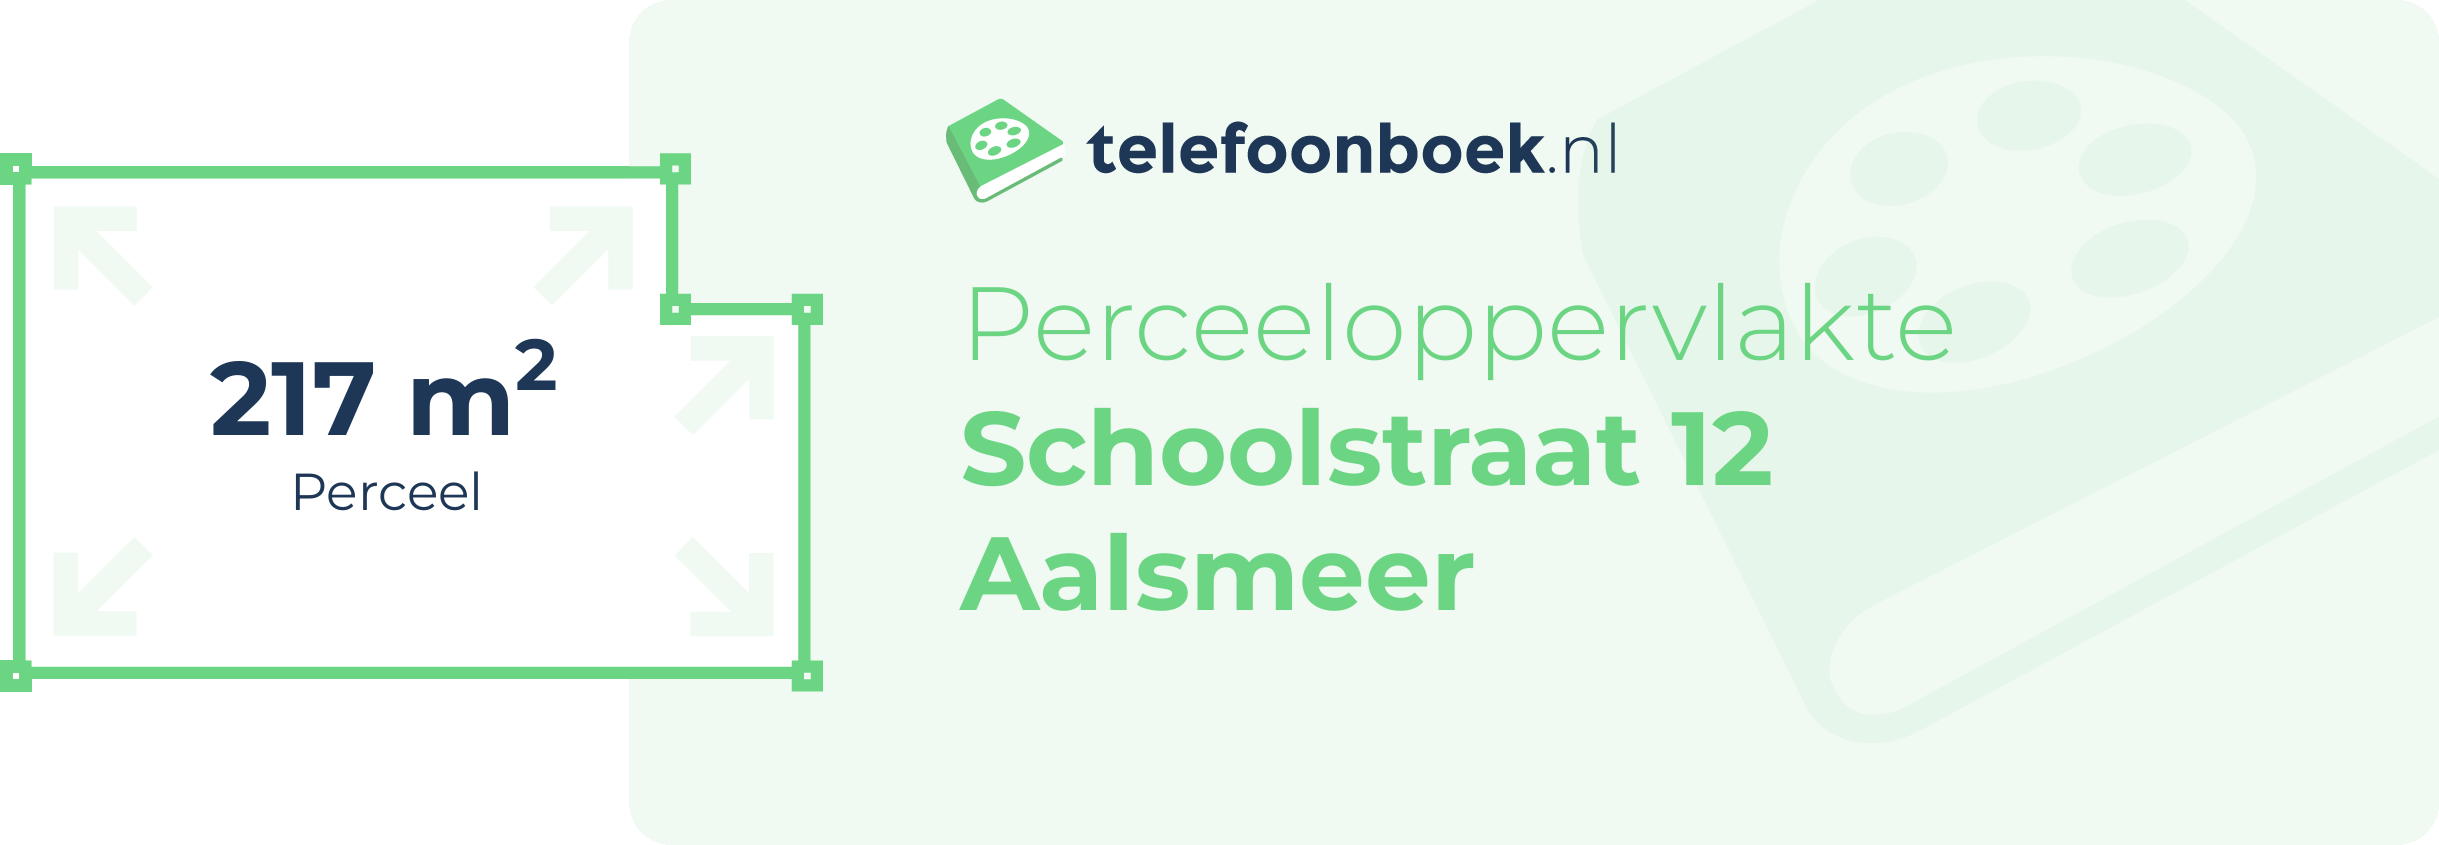 Perceeloppervlakte Schoolstraat 12 Aalsmeer